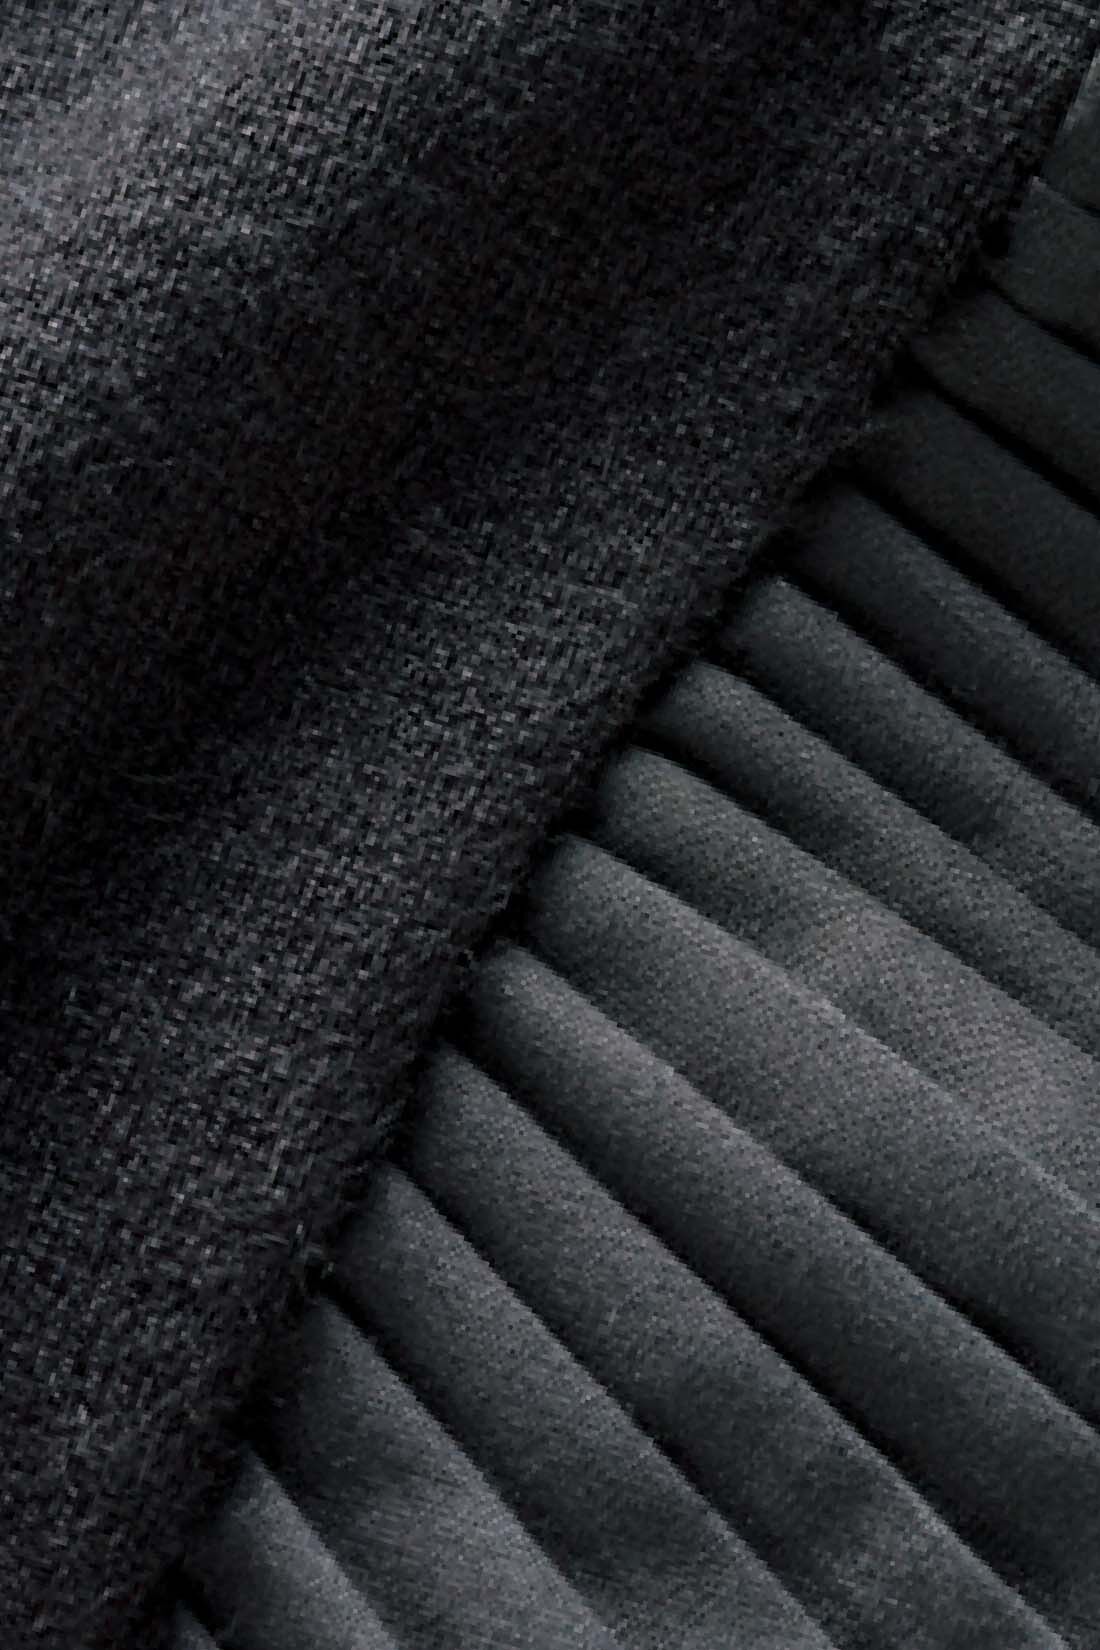 DRECO by IEDIT|IEDIT[イディット]　袖プリーツデザインの異素材遣いニットワンピース〈ブラック〉|しっかり厚みのあるミラノリブニットと、マットな質感の布はくプリーツ袖の上品な異素材遣いが新鮮。